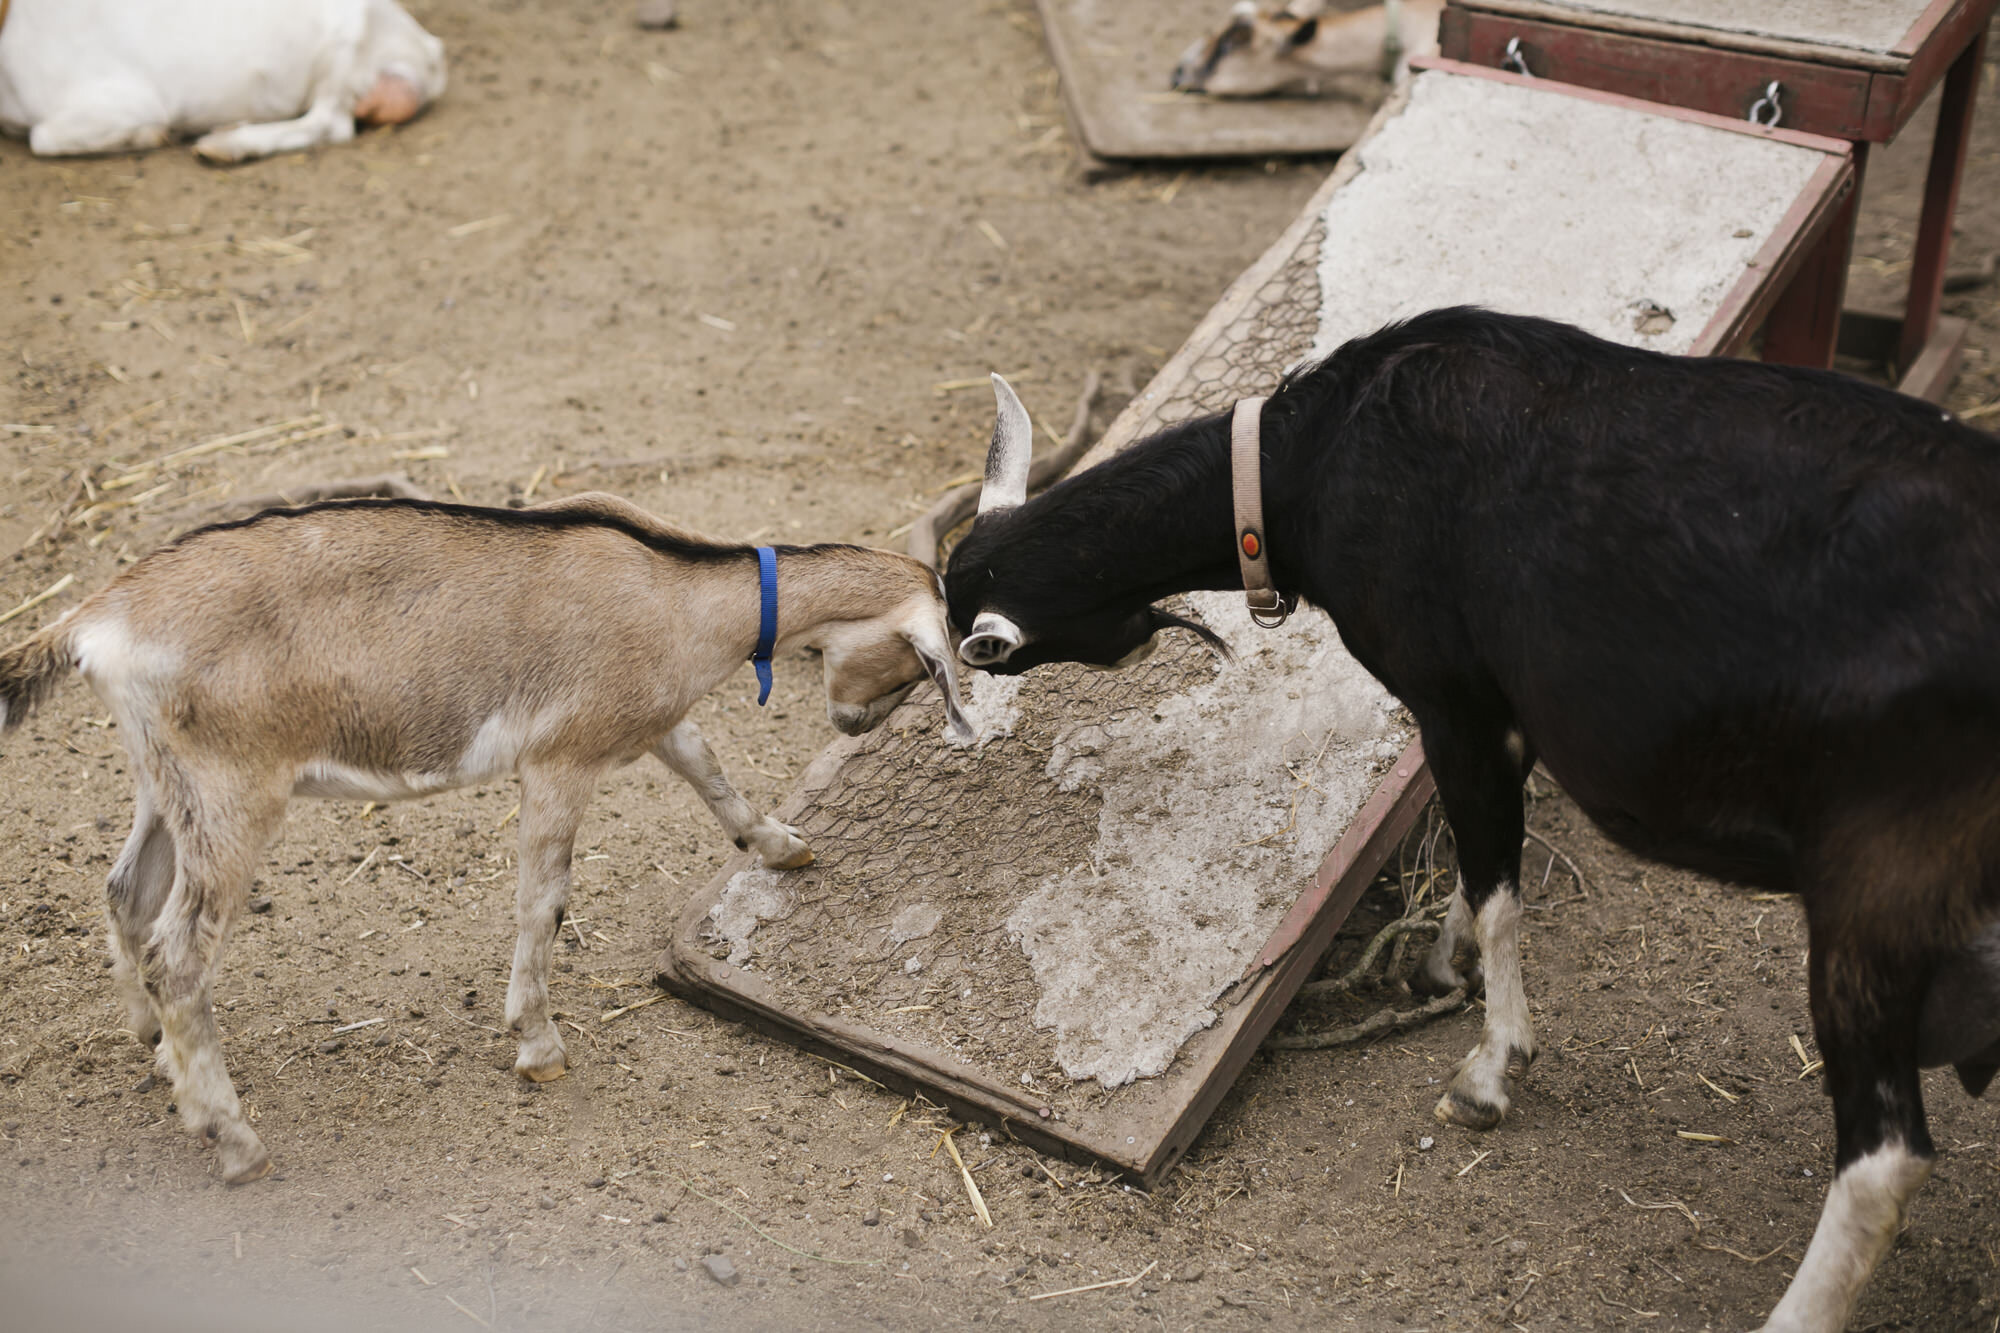 Two goats playfully butt heads